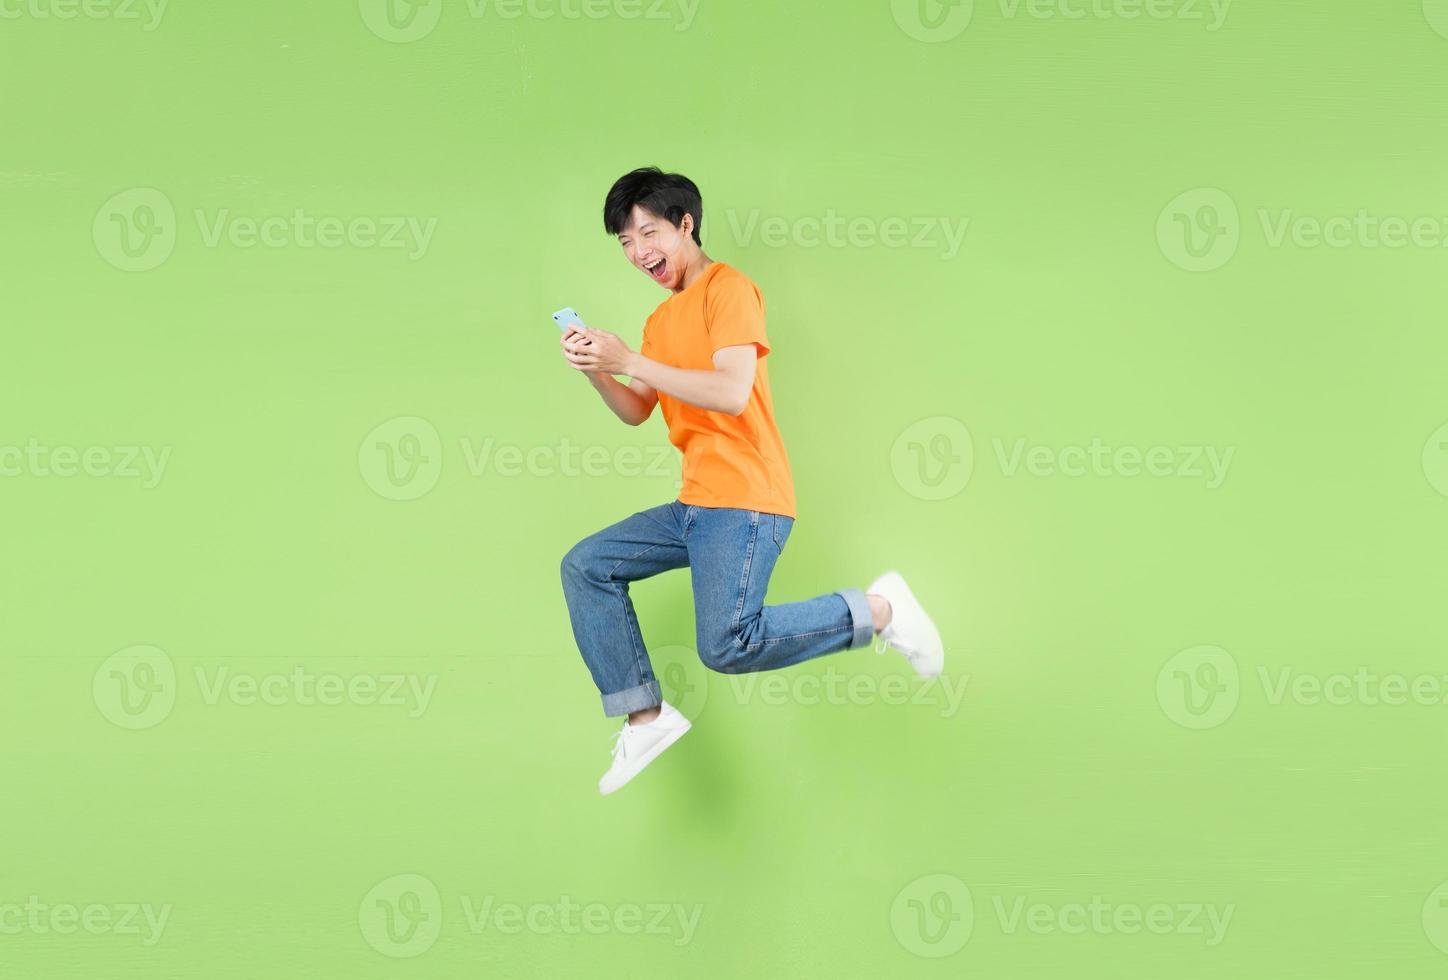 homme asiatique sautant et tenant un smartphone, isolé sur vert photo